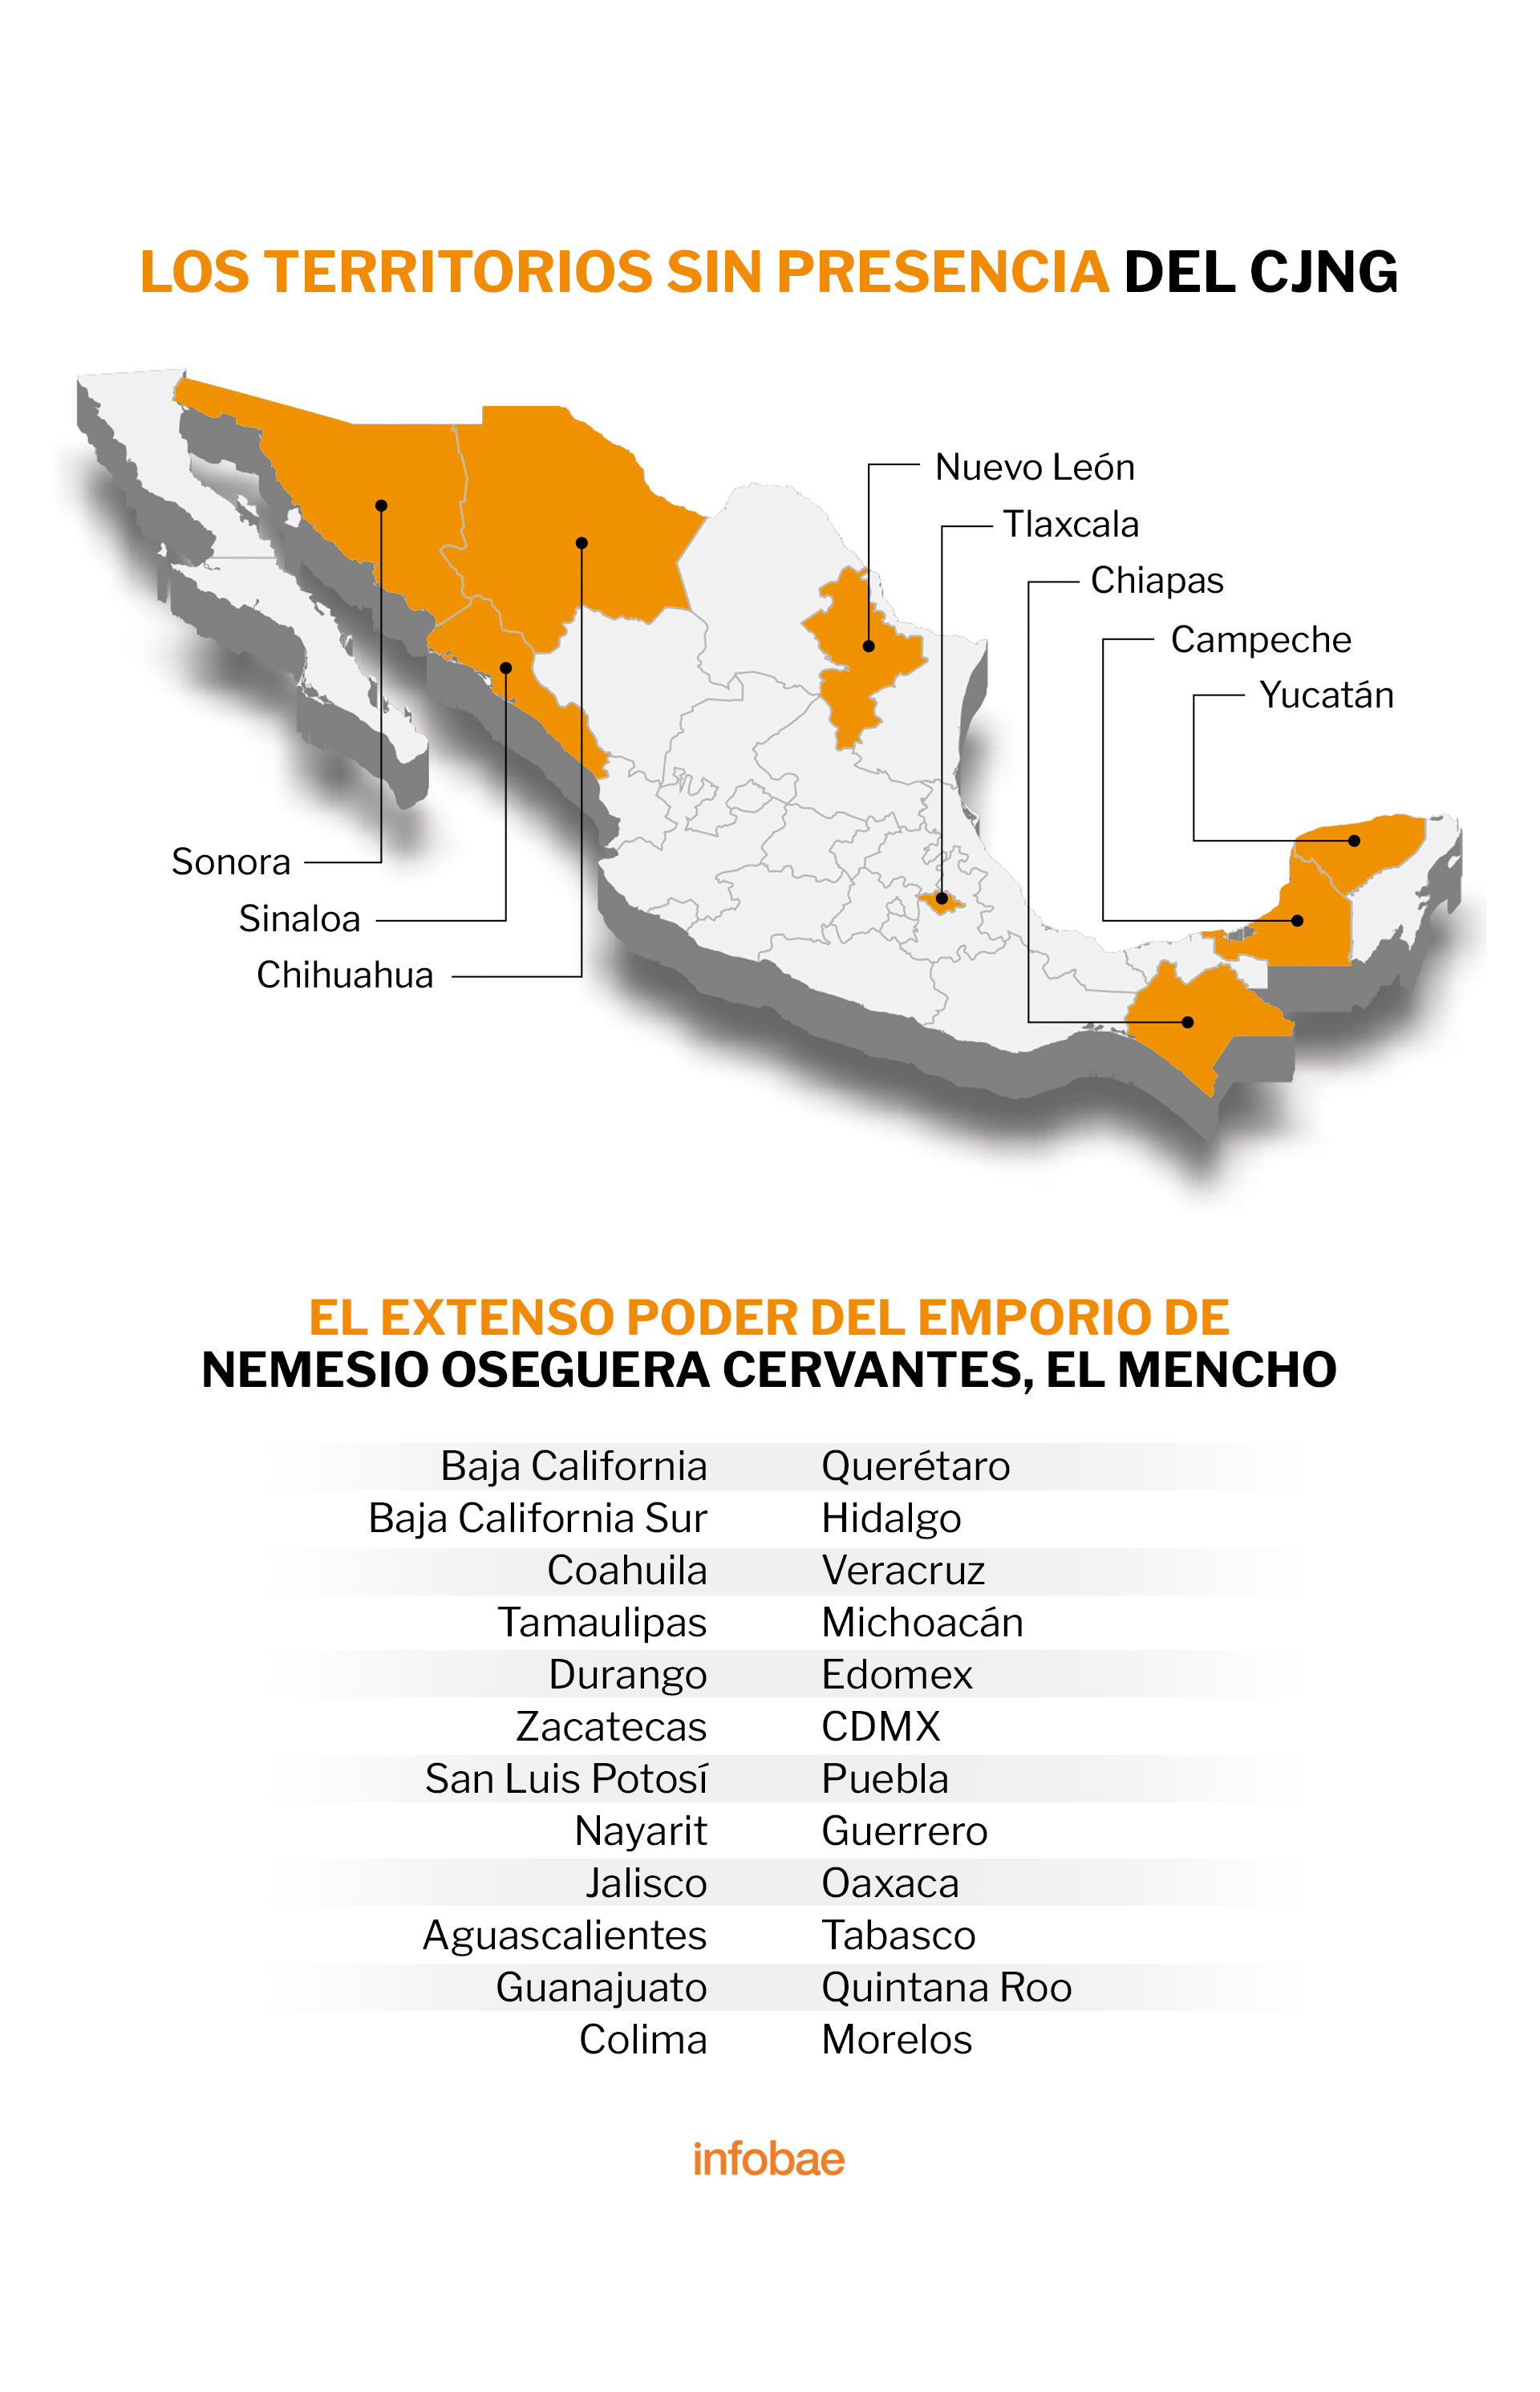 En el mapa se señala los territorios donde no hay presencia del CJNG. La tabla, los 24 estados donde ha logrado expandir su poder  (Mapa: Infobae México)